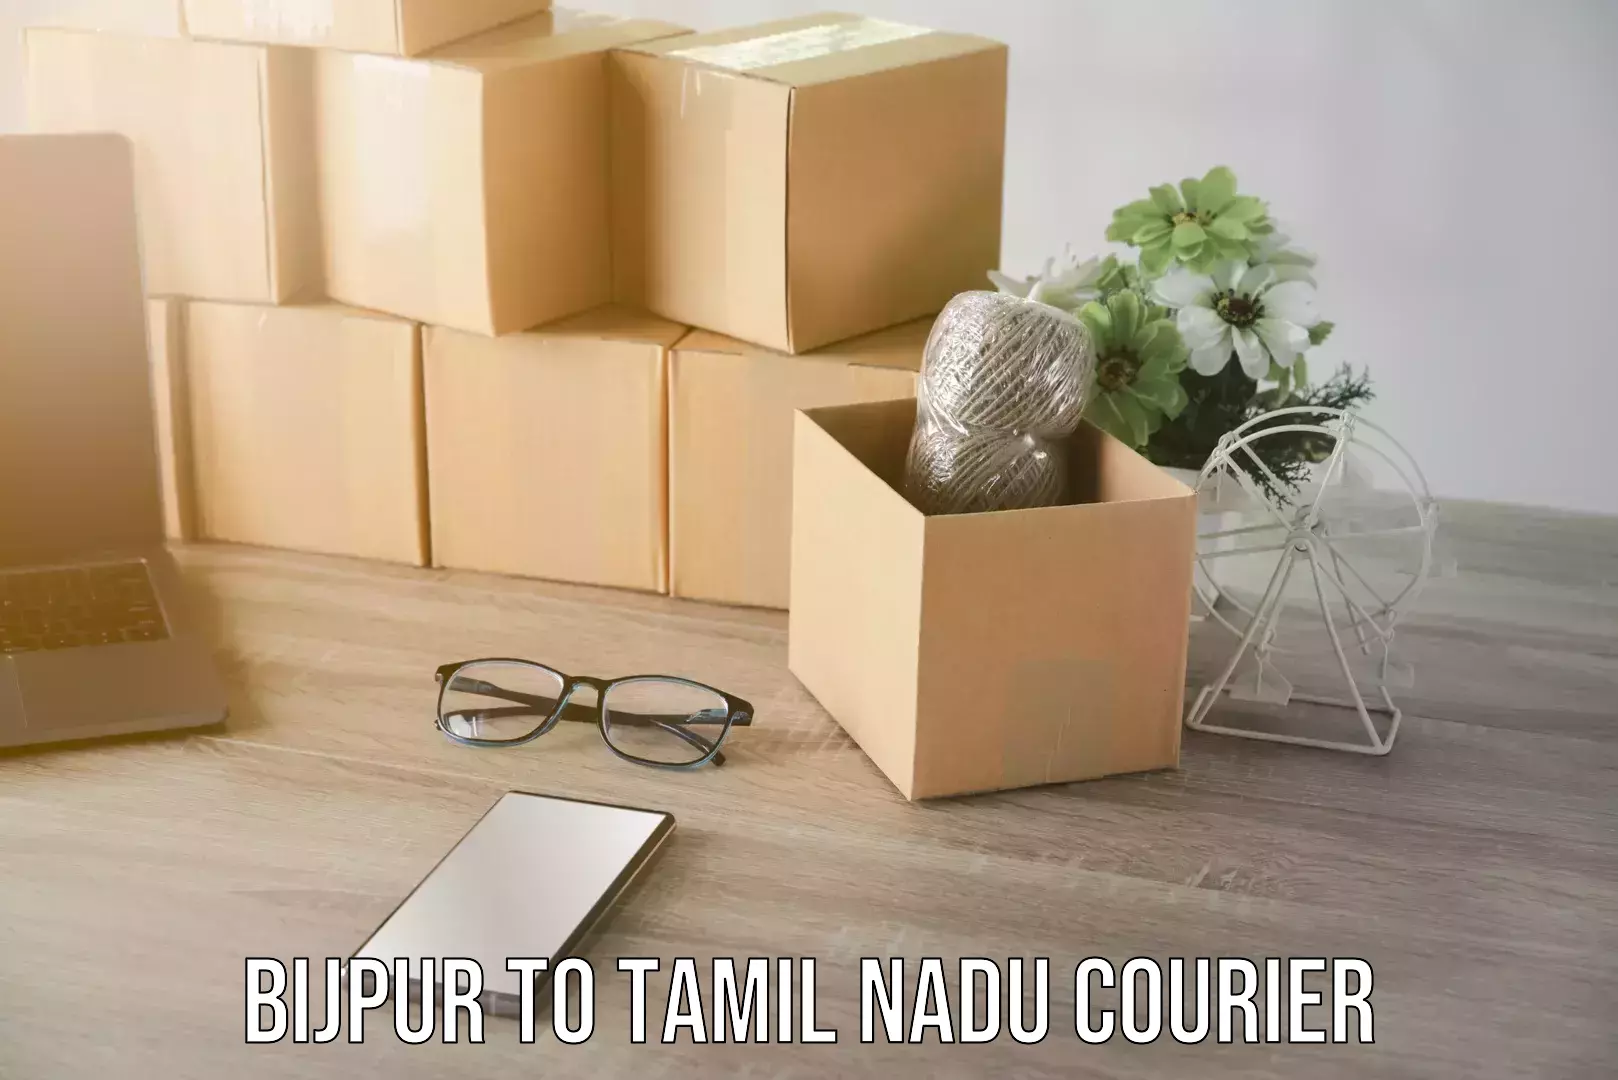 Weekend courier service Bijpur to Tamil Nadu